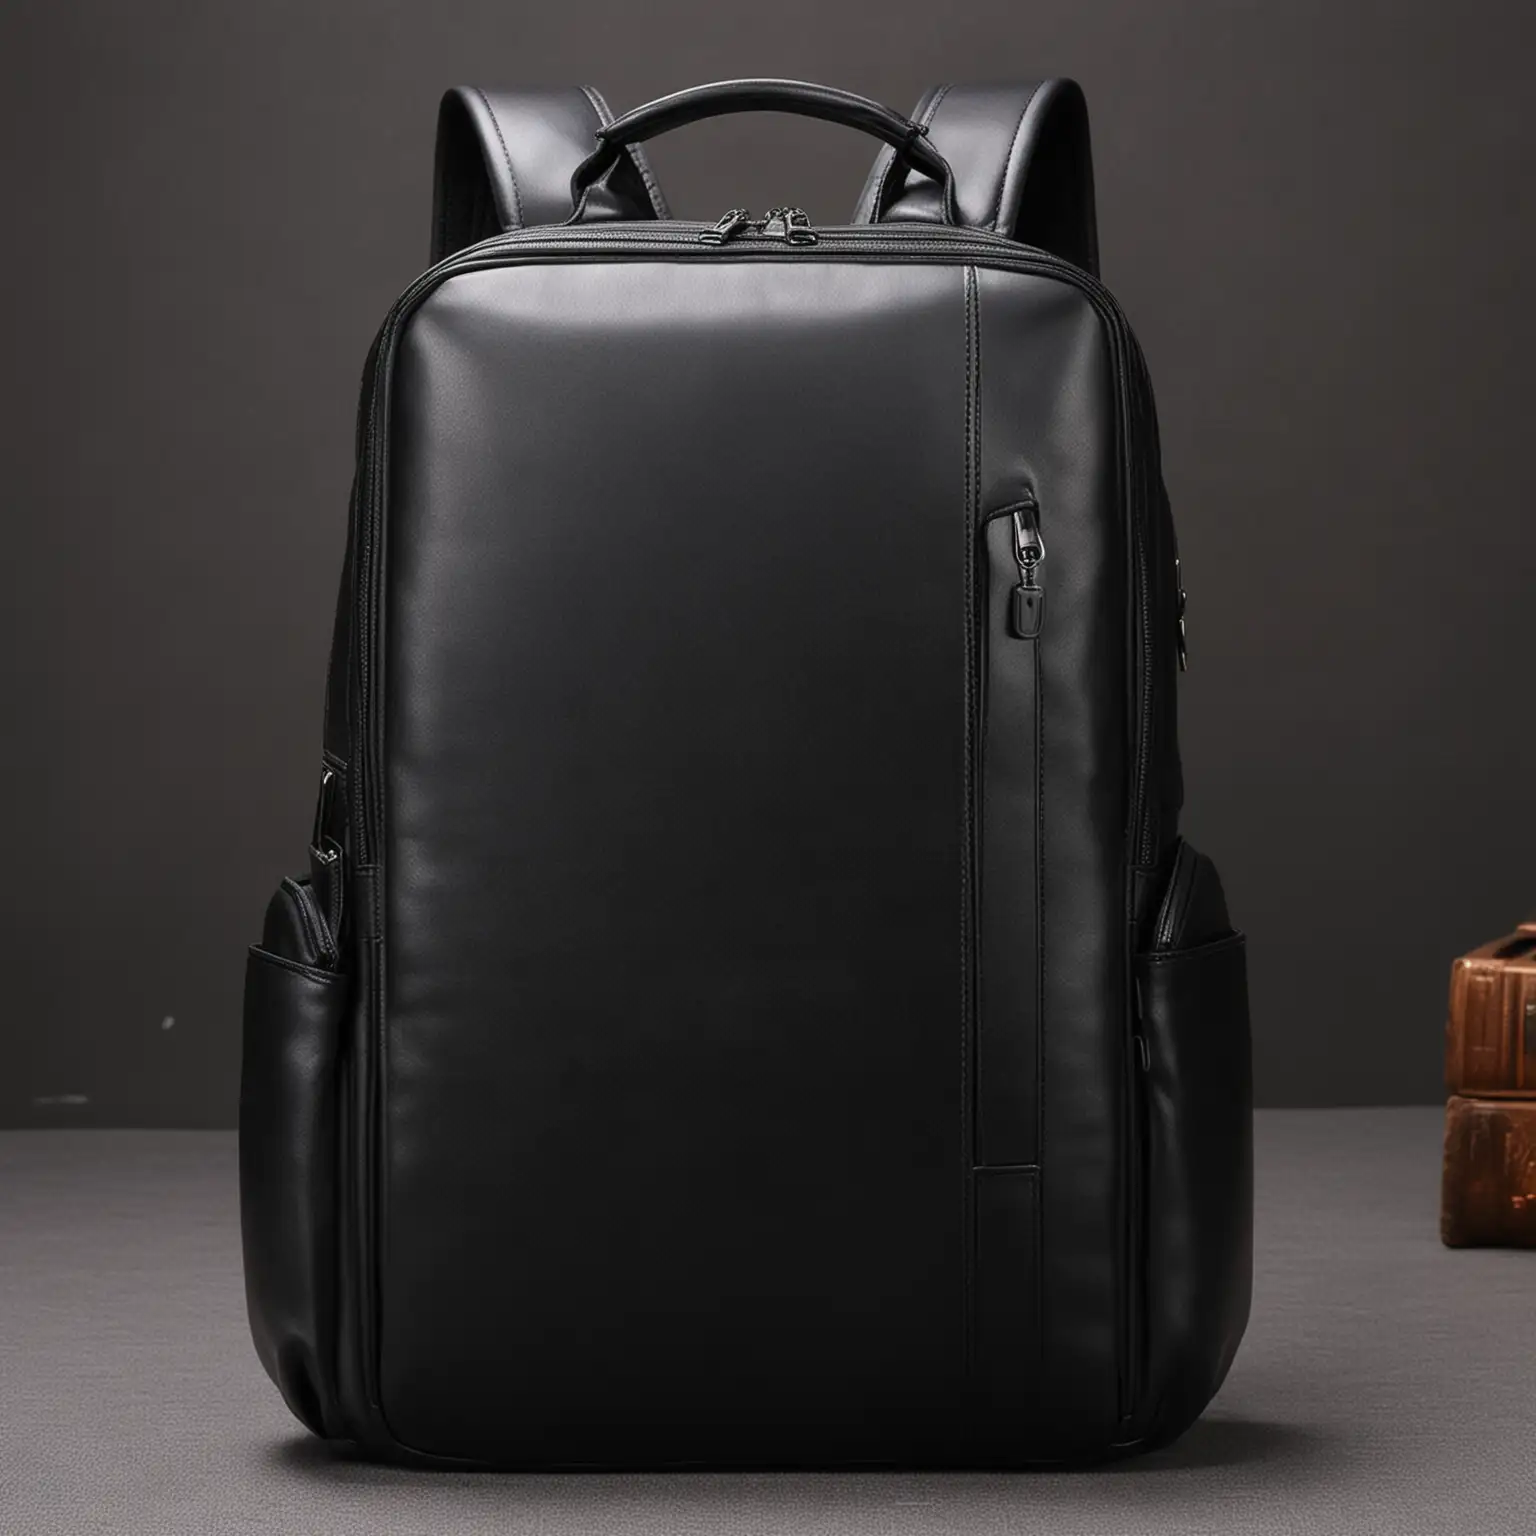 Professional Business Double Shoulder Bag in Sleek Pure Black Color for Men